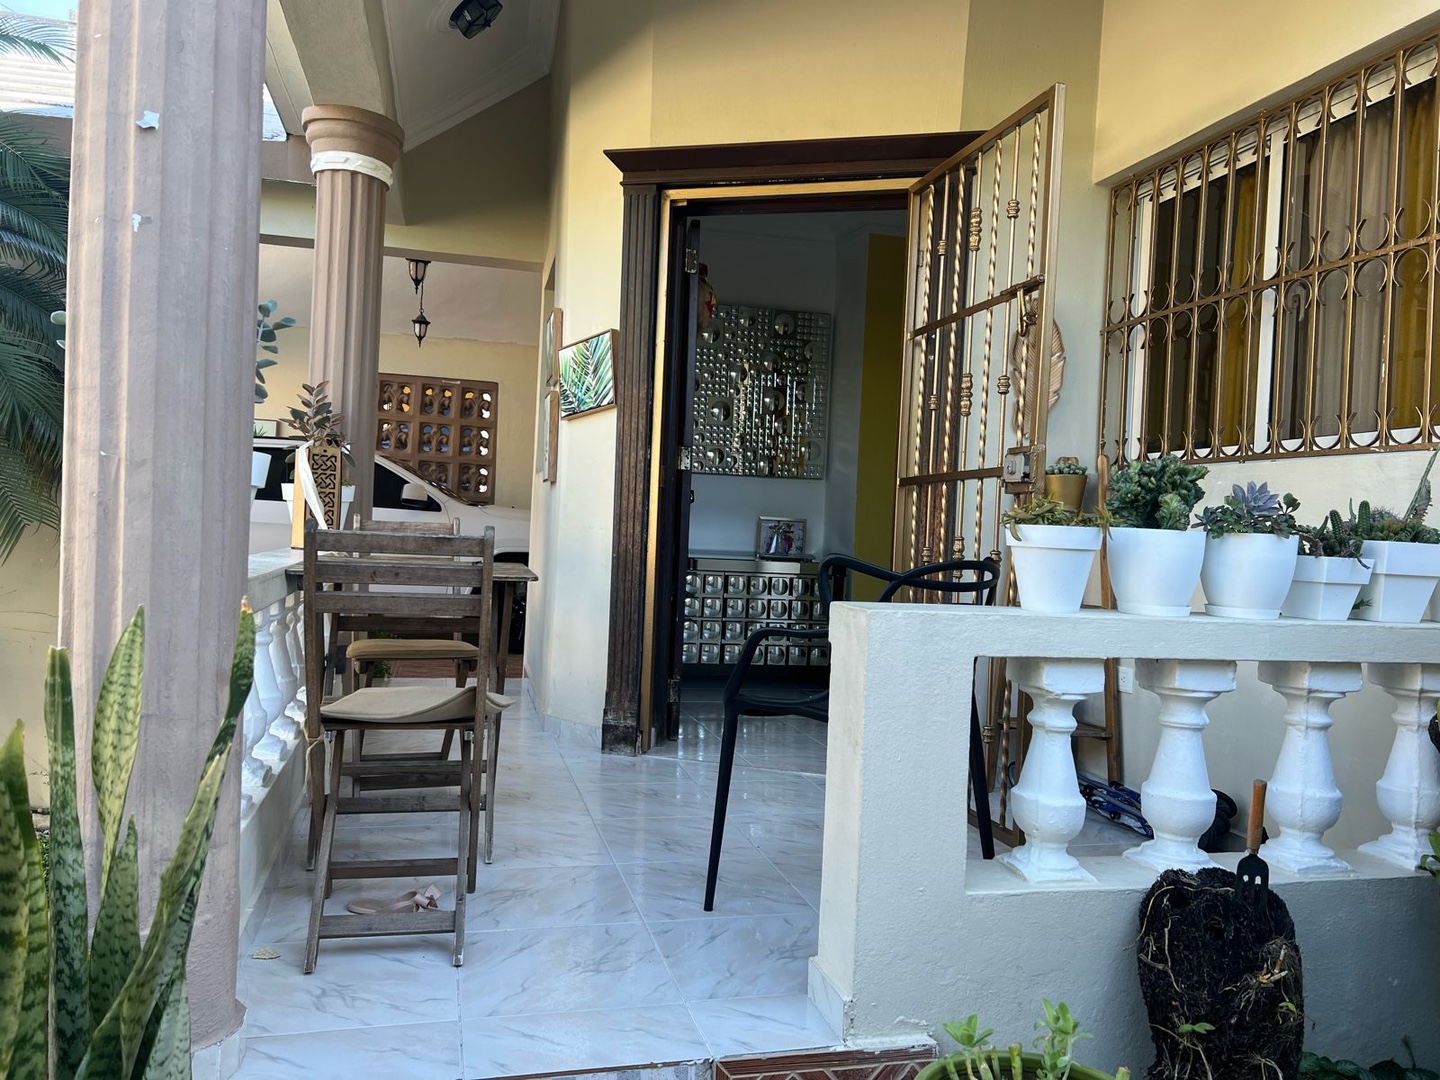 casas - Vendo casa en Paraíso del caribe Residencial cerrado vigilancia 24/7  6